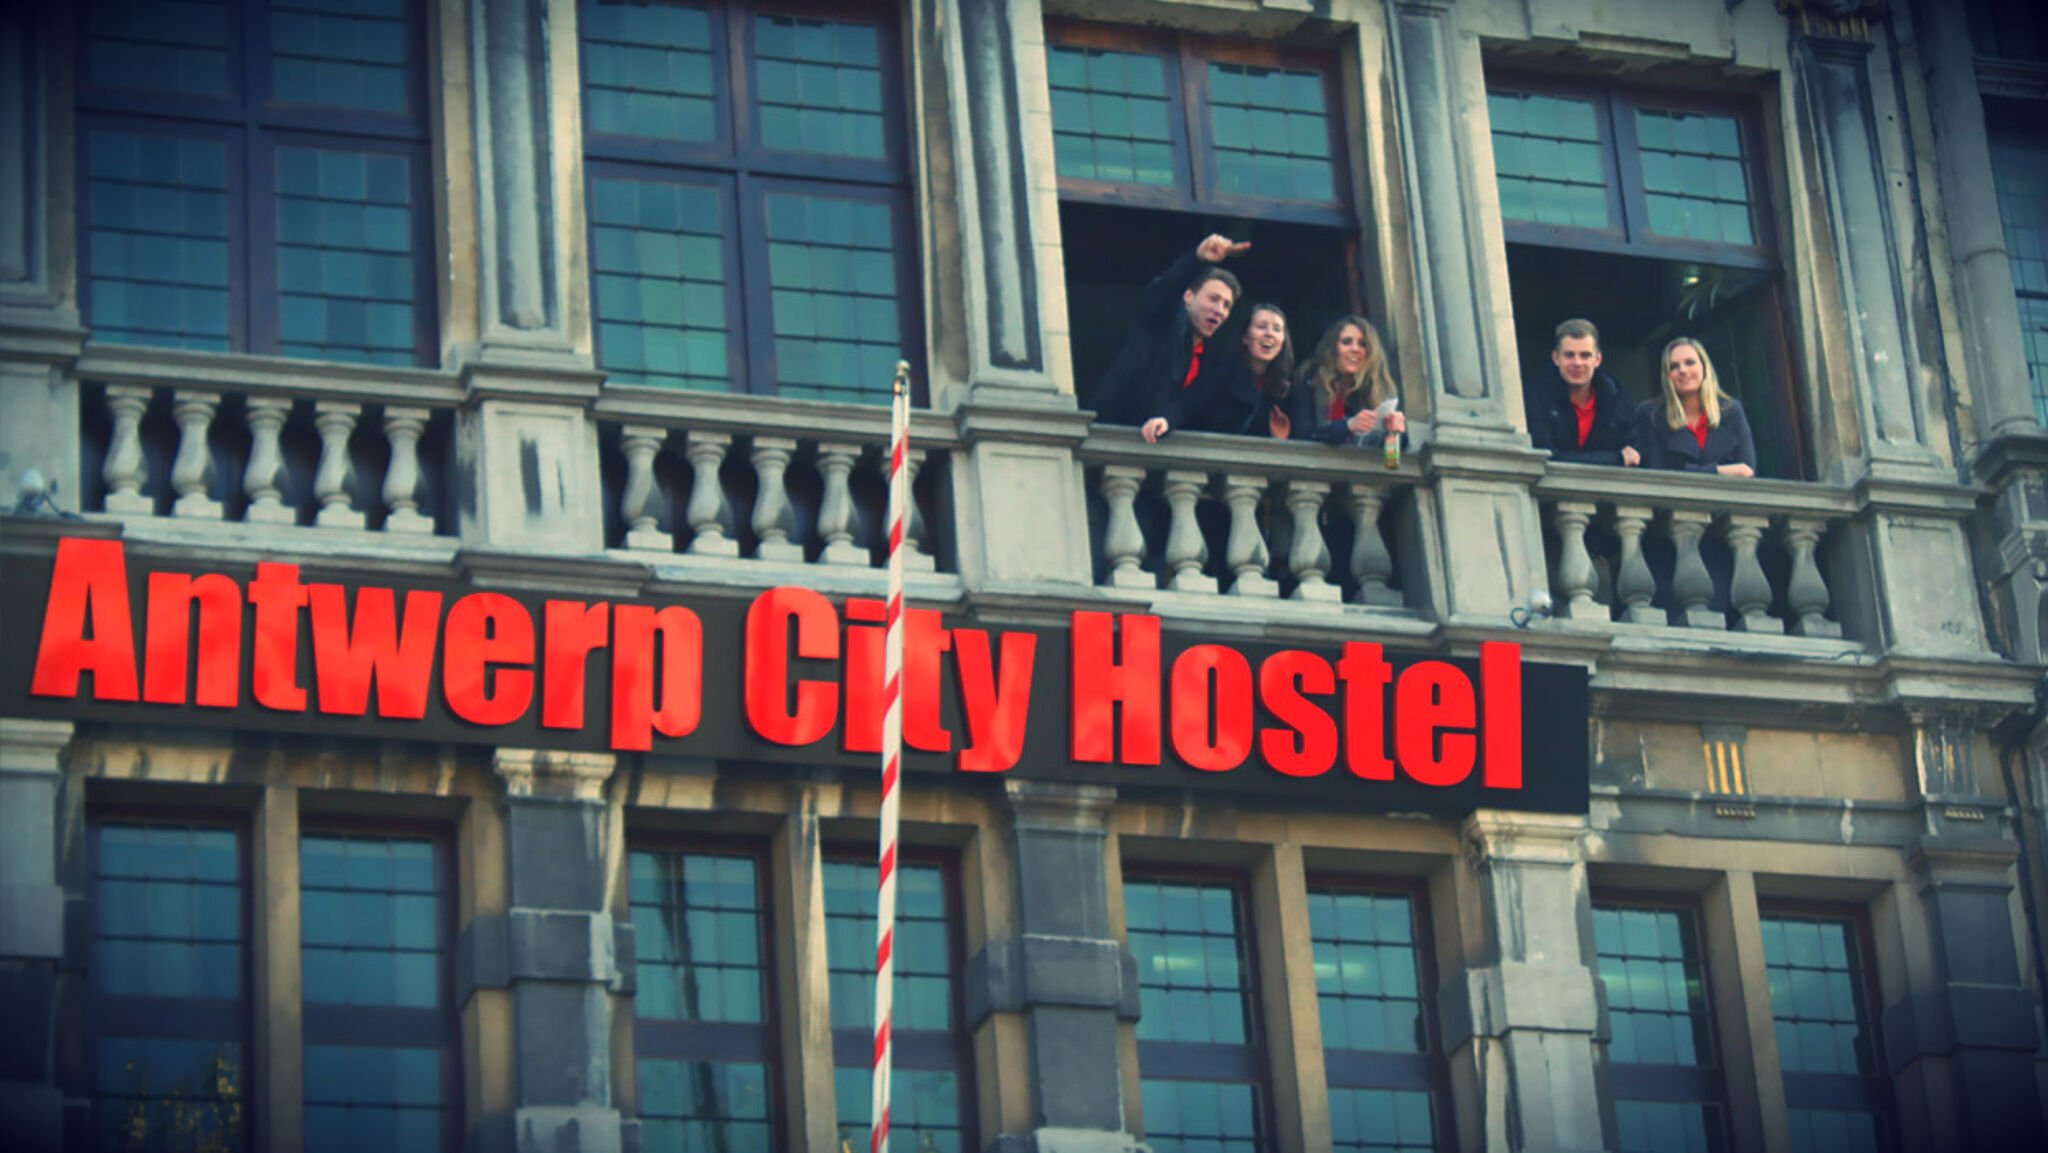 &mdash;Antwerp City Hostel